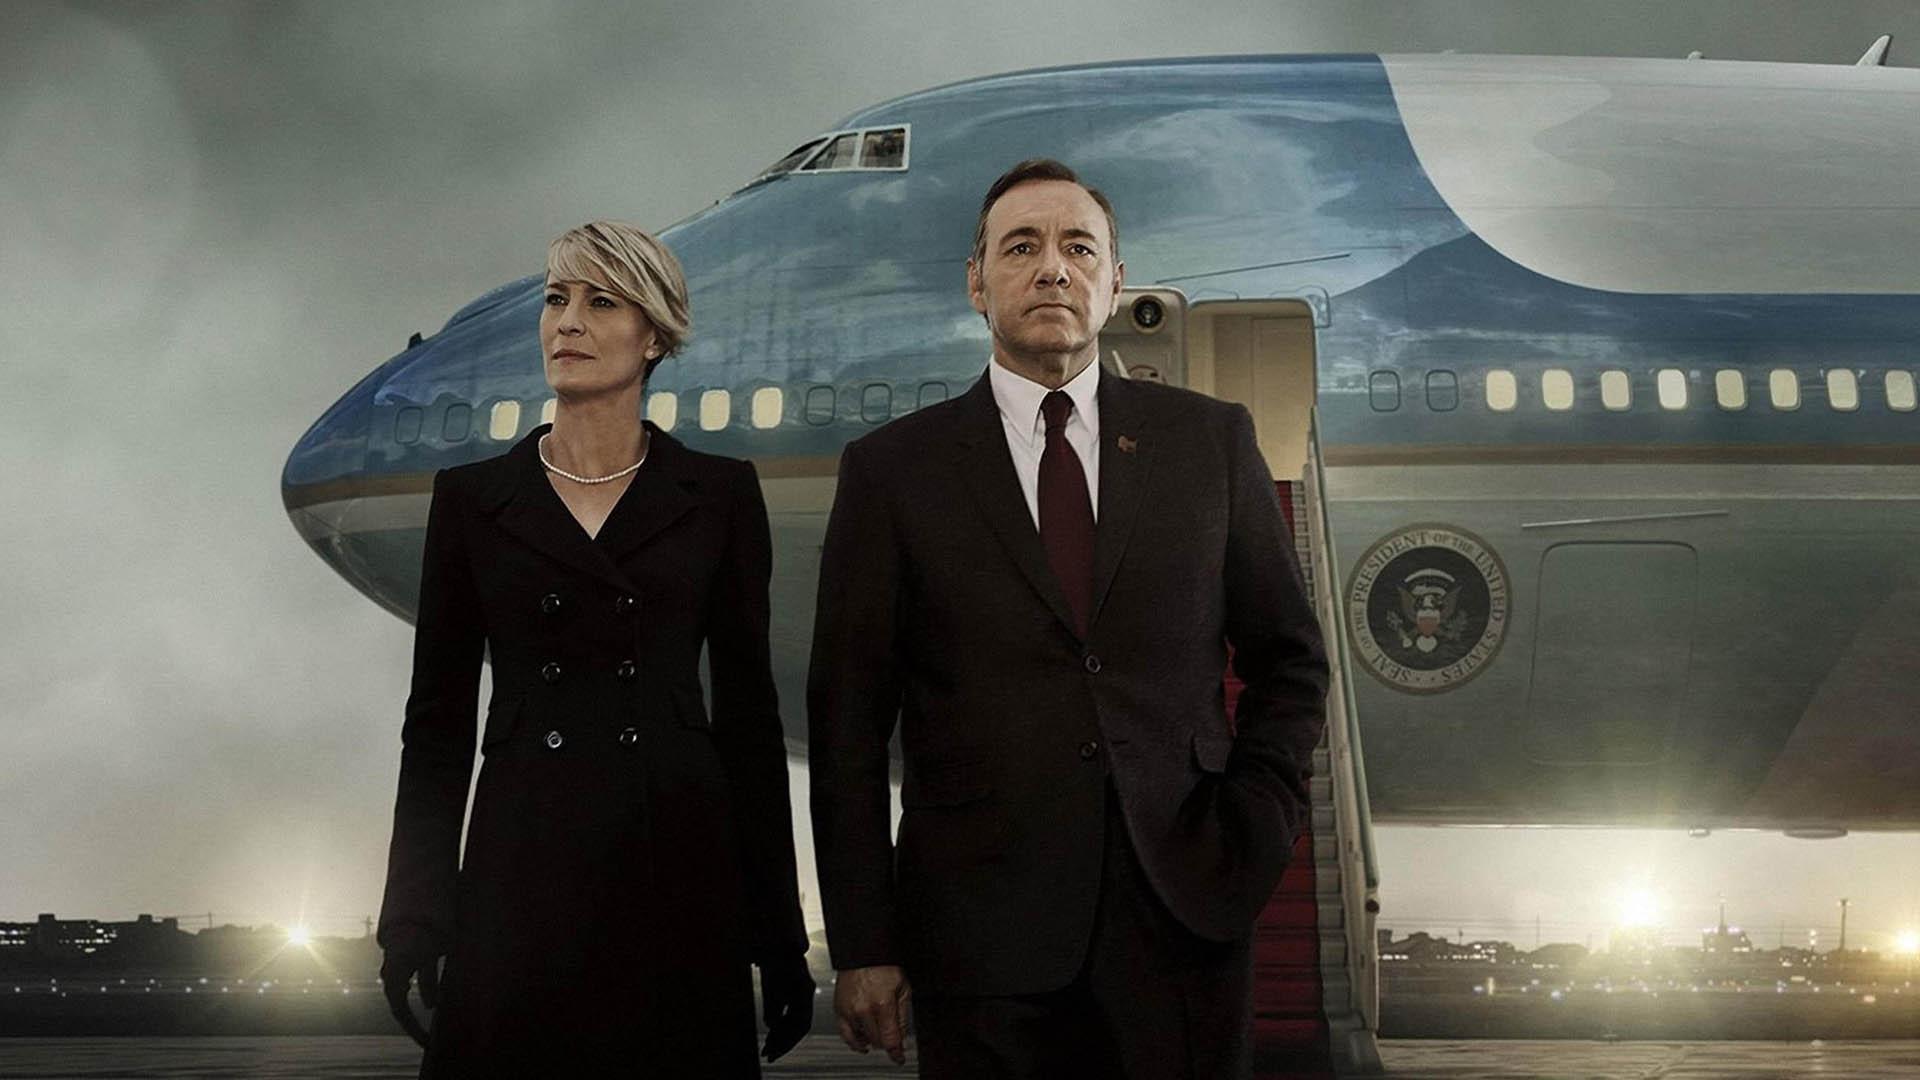 کوین اسپیسی و رابین رایت در مقابل هواپیمای مخصوص رئیس جمهور آمریکا در سریال house of cards 